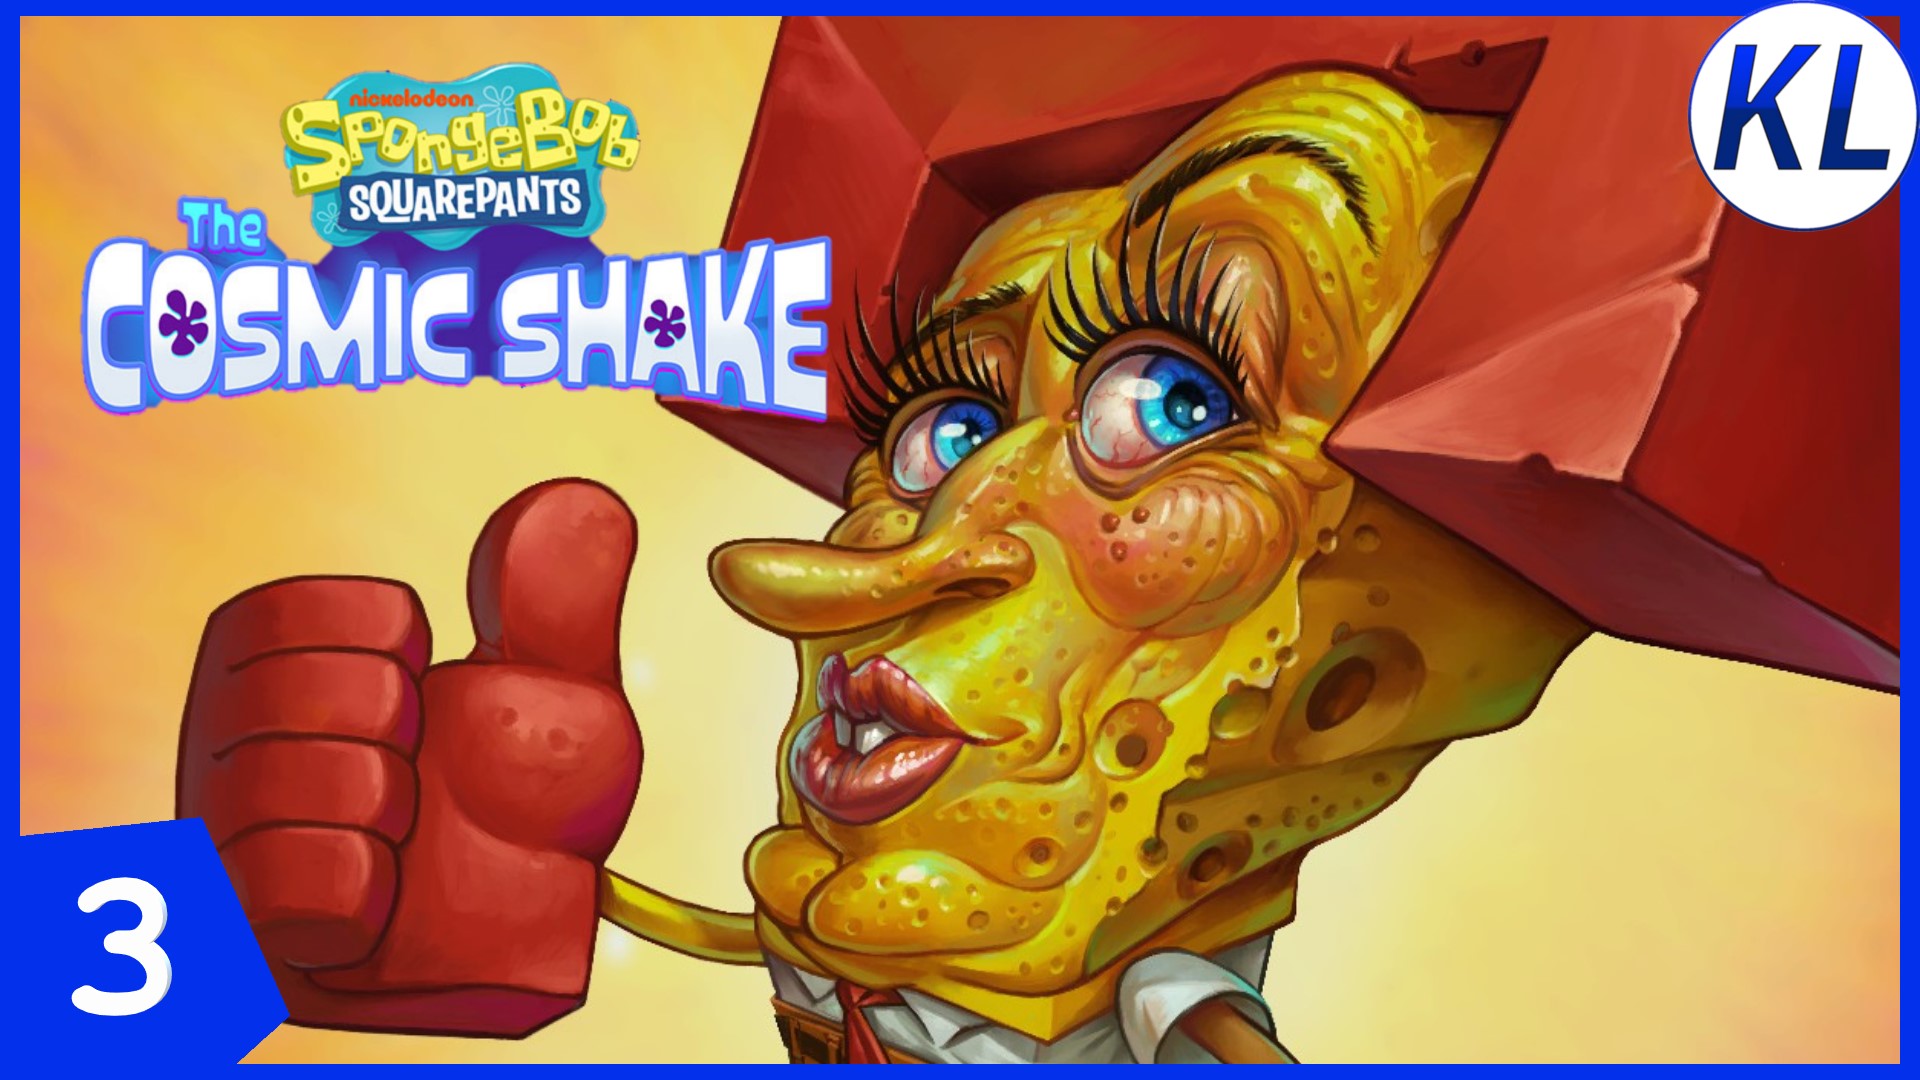 СПАНЧ БОБ — КАРАТЭ-ЗВЕЗДА! SpongeBob SquarePants: The Cosmic Shake #3 ПРОХОЖДЕНИЕ